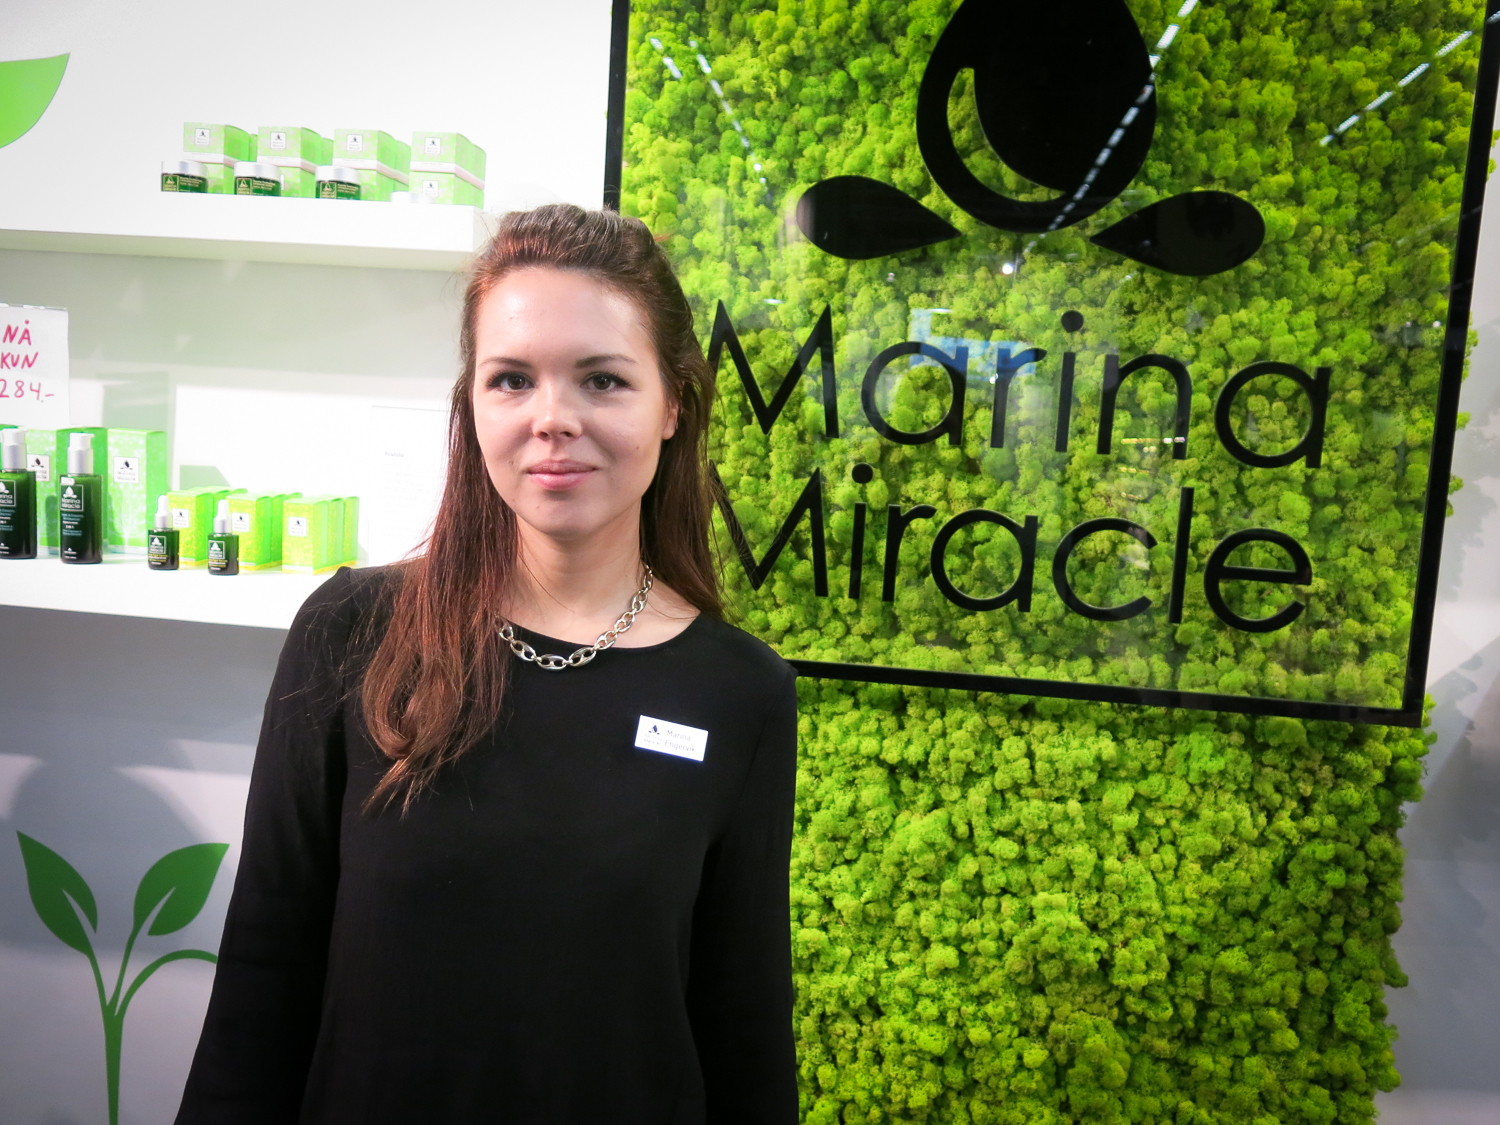 Norska Marina Engervik har precis öppnat butik i Norge från att bara funnits på nätet. Hon har sedan födseln haft svår atopiskt eksem och fick bara lindring av jättenattljusolja. Hon började tidigt experimentera med oljor i sitt eget kök . Nu gör hennes oljor succé i Norden 